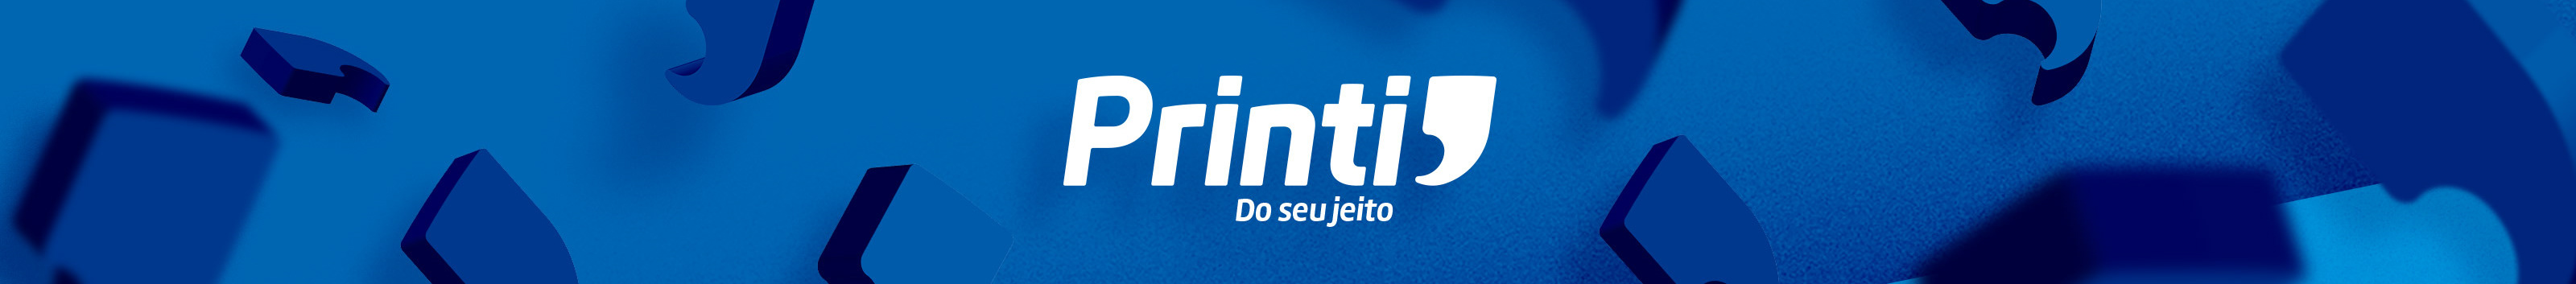 Profil-Banner von Printi .com.br